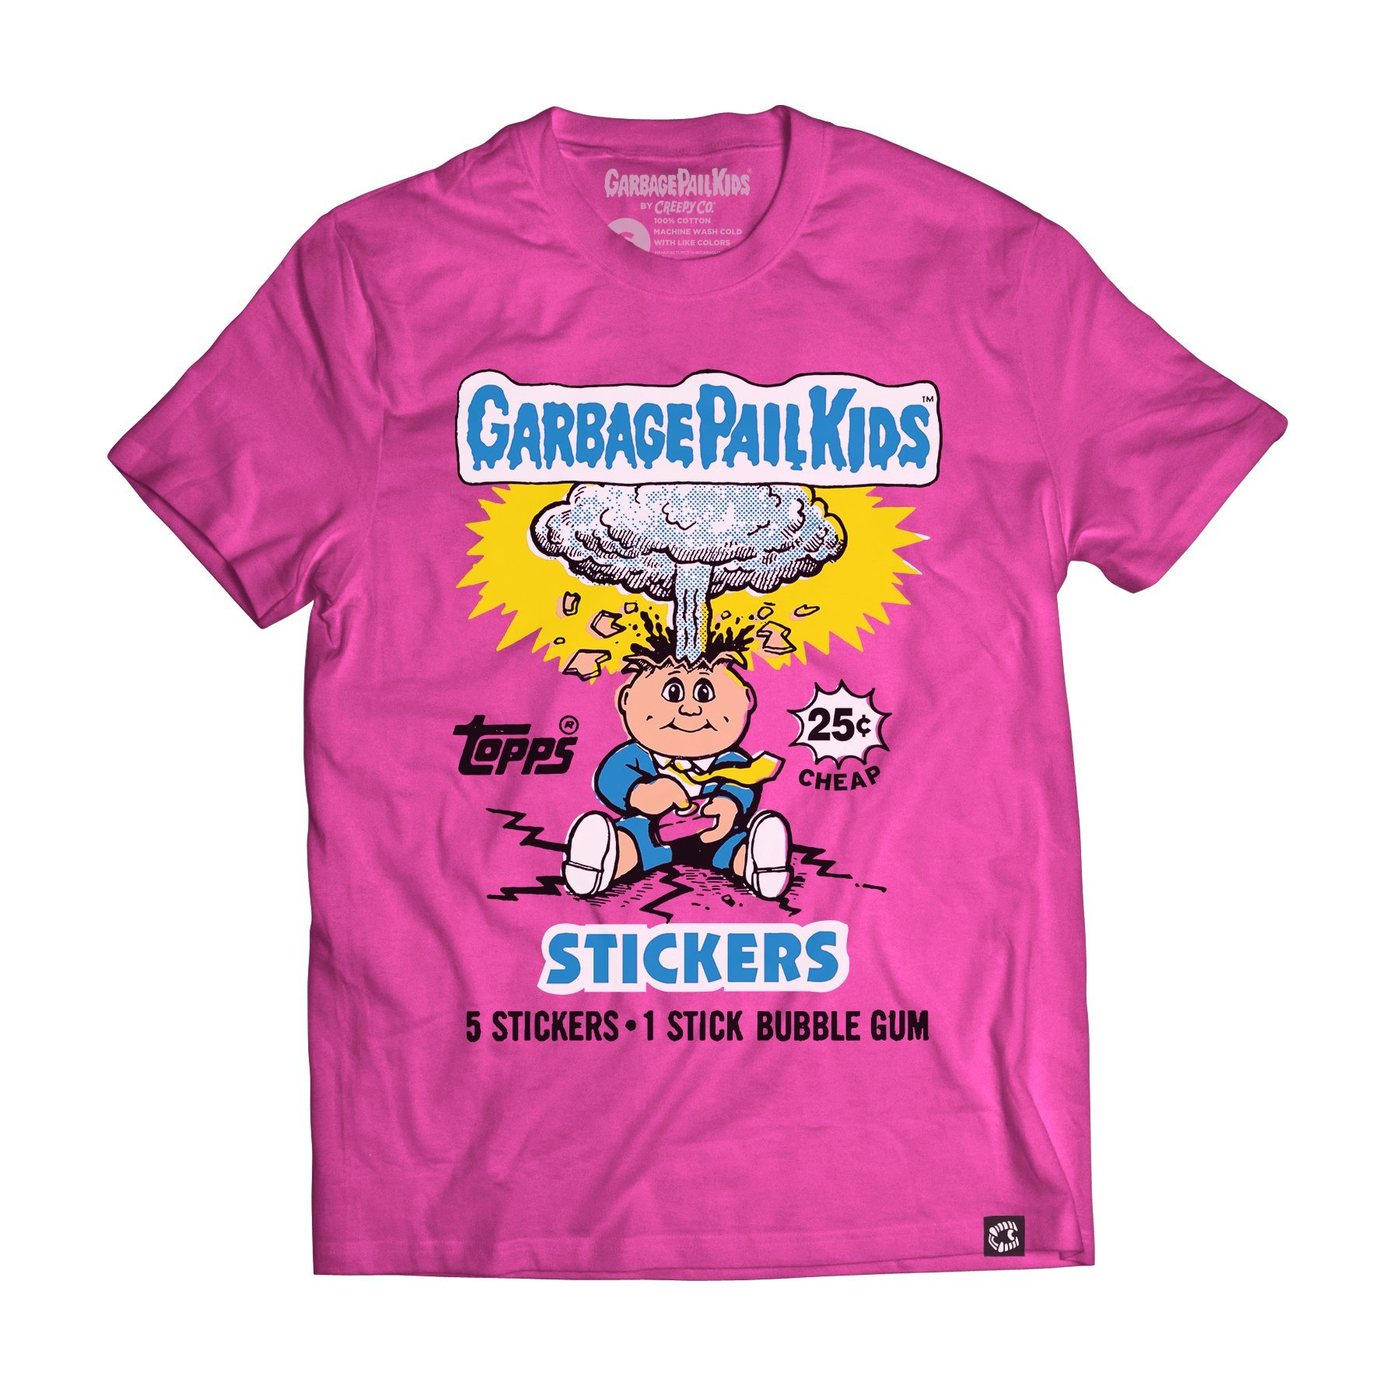 Garbage Pail Kids, Stickers T-shirt, Adam Bomb, Wax Pack Series 1